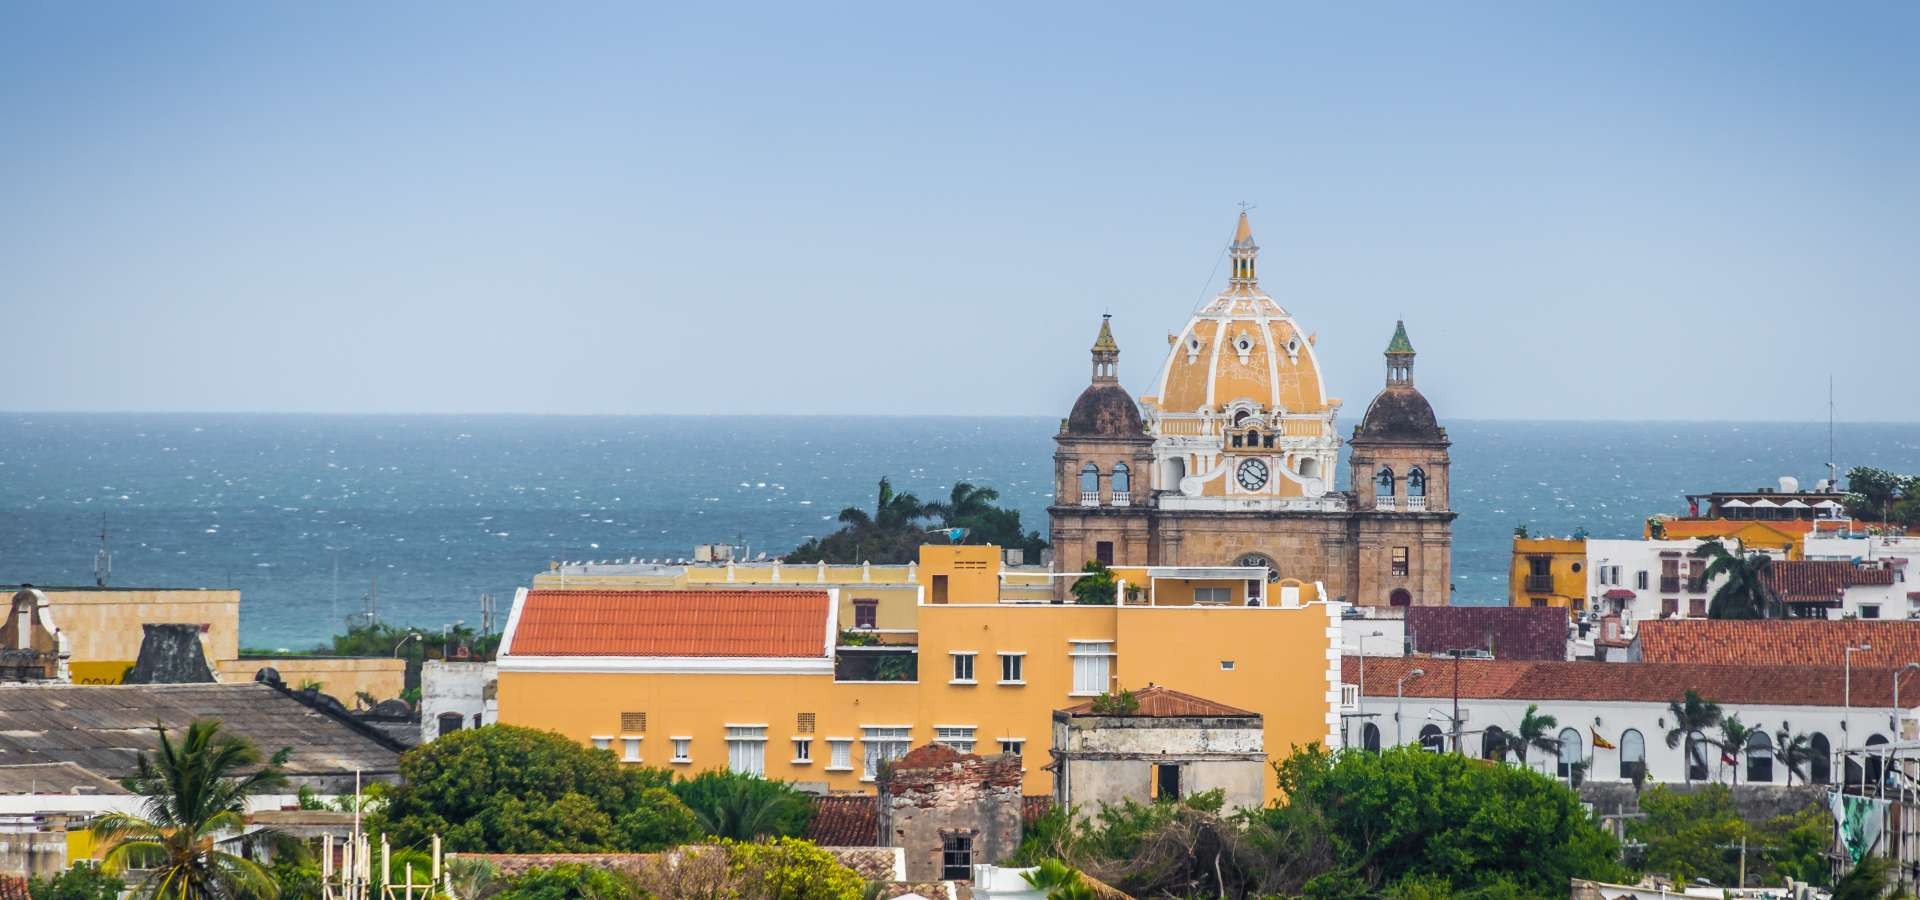 Cartagena de Indias, the colonial Jewel of Colombia